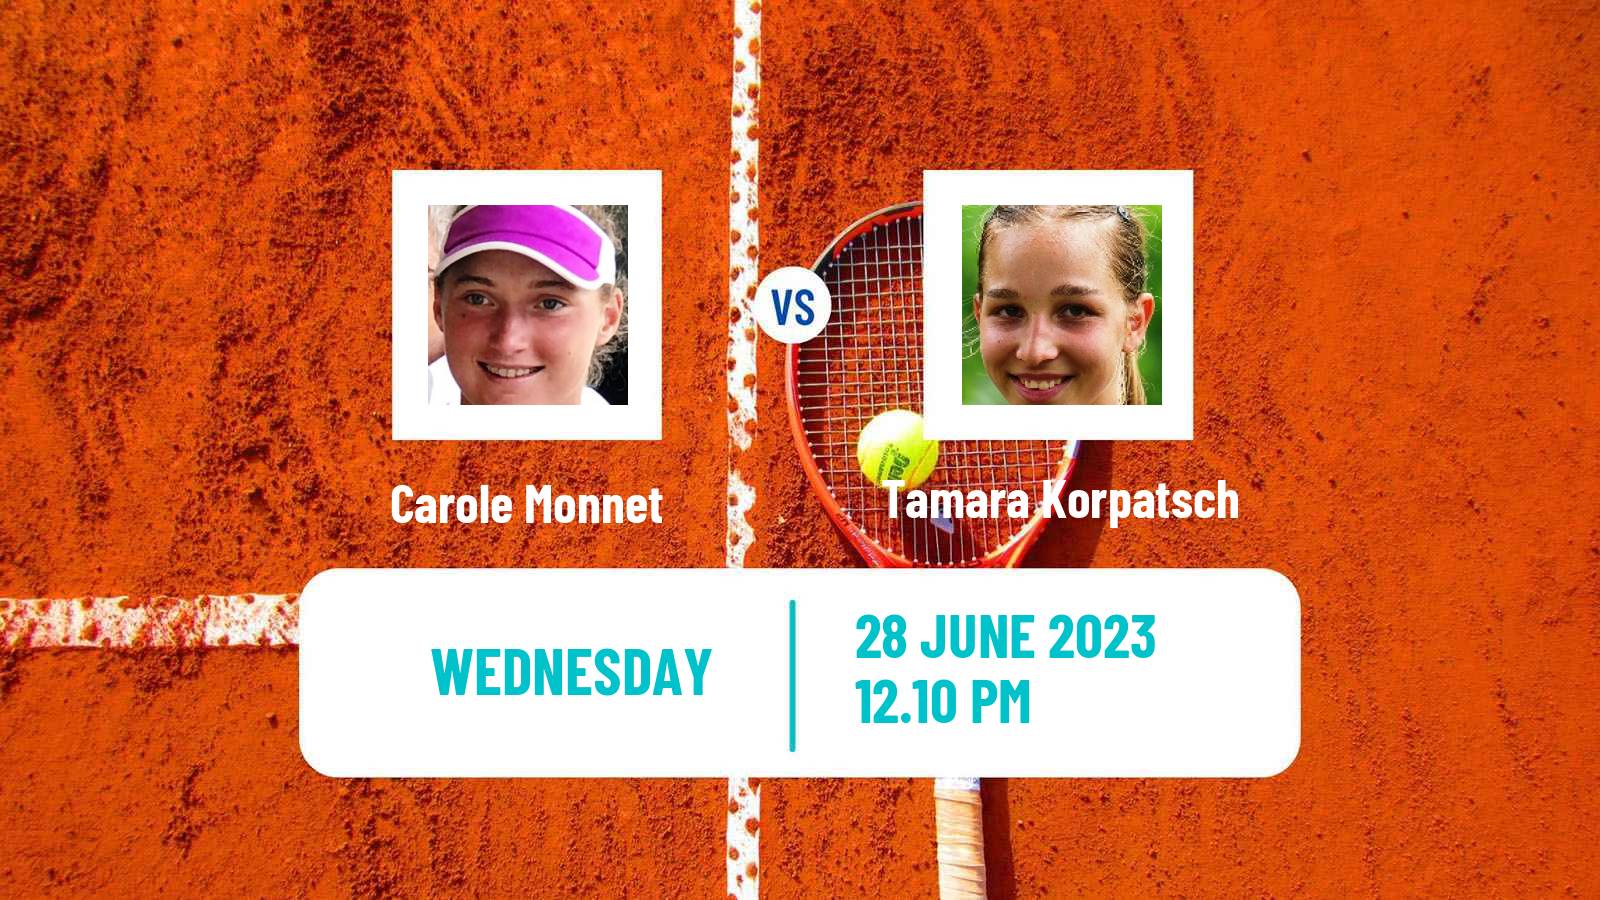 Tennis WTA Wimbledon Carole Monnet - Tamara Korpatsch